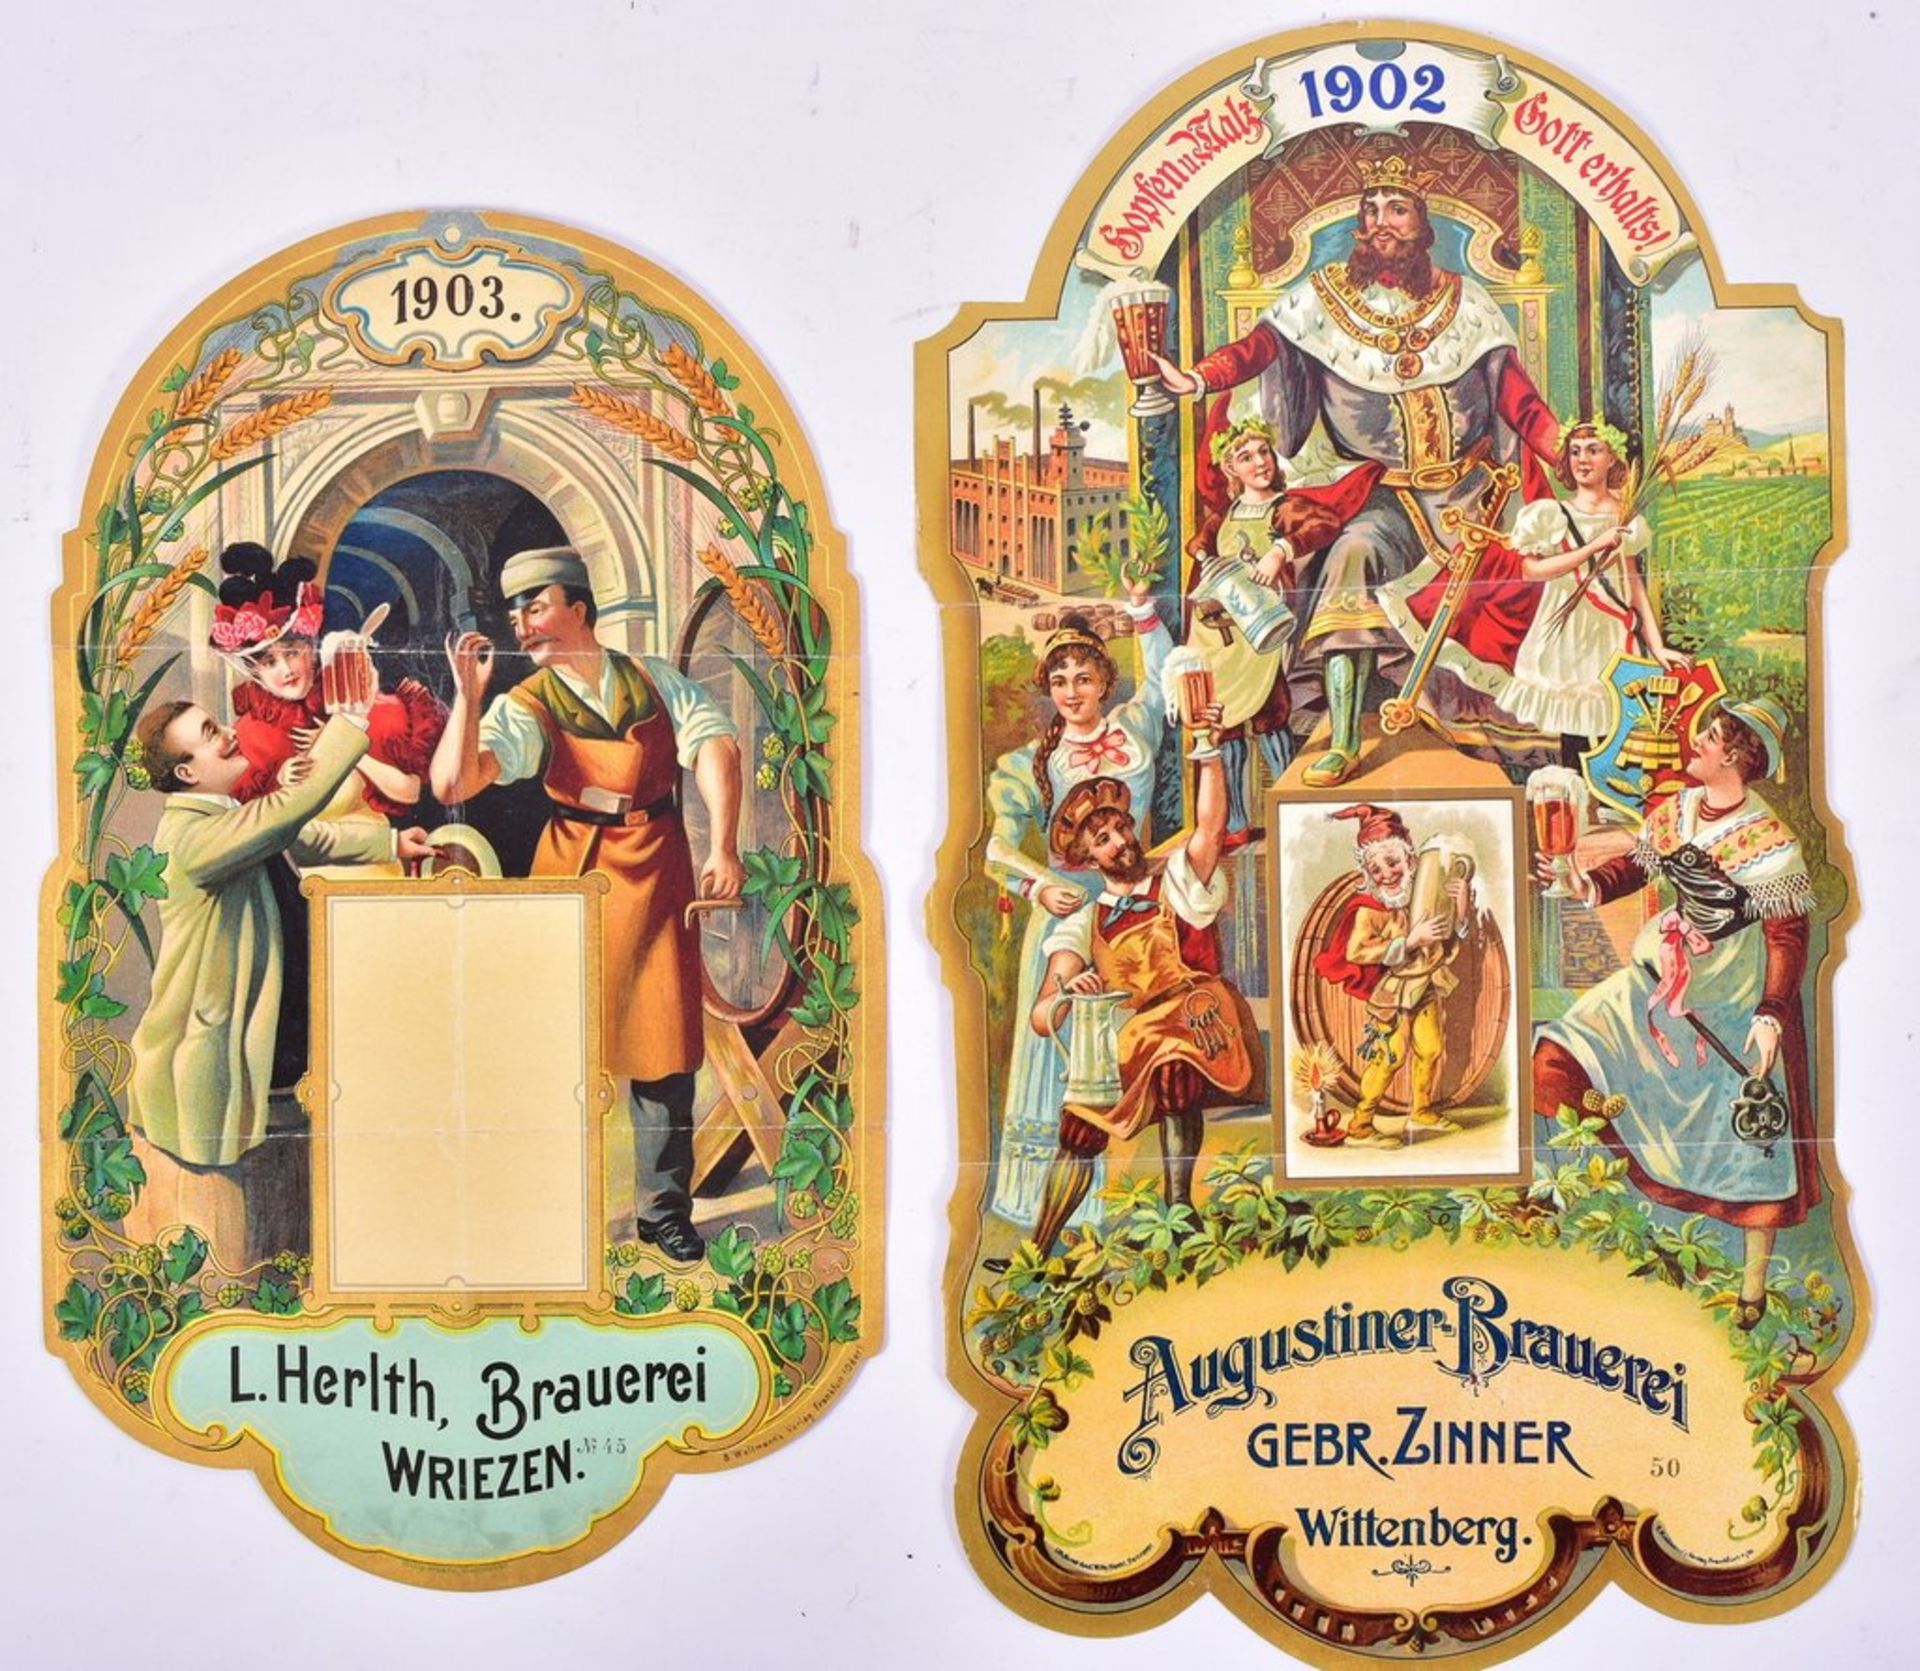 Große Glanzbild Werbe-Oblaten (Papier), "Brauerei L.Herlth Wriezen Brandenburg" u. "August.